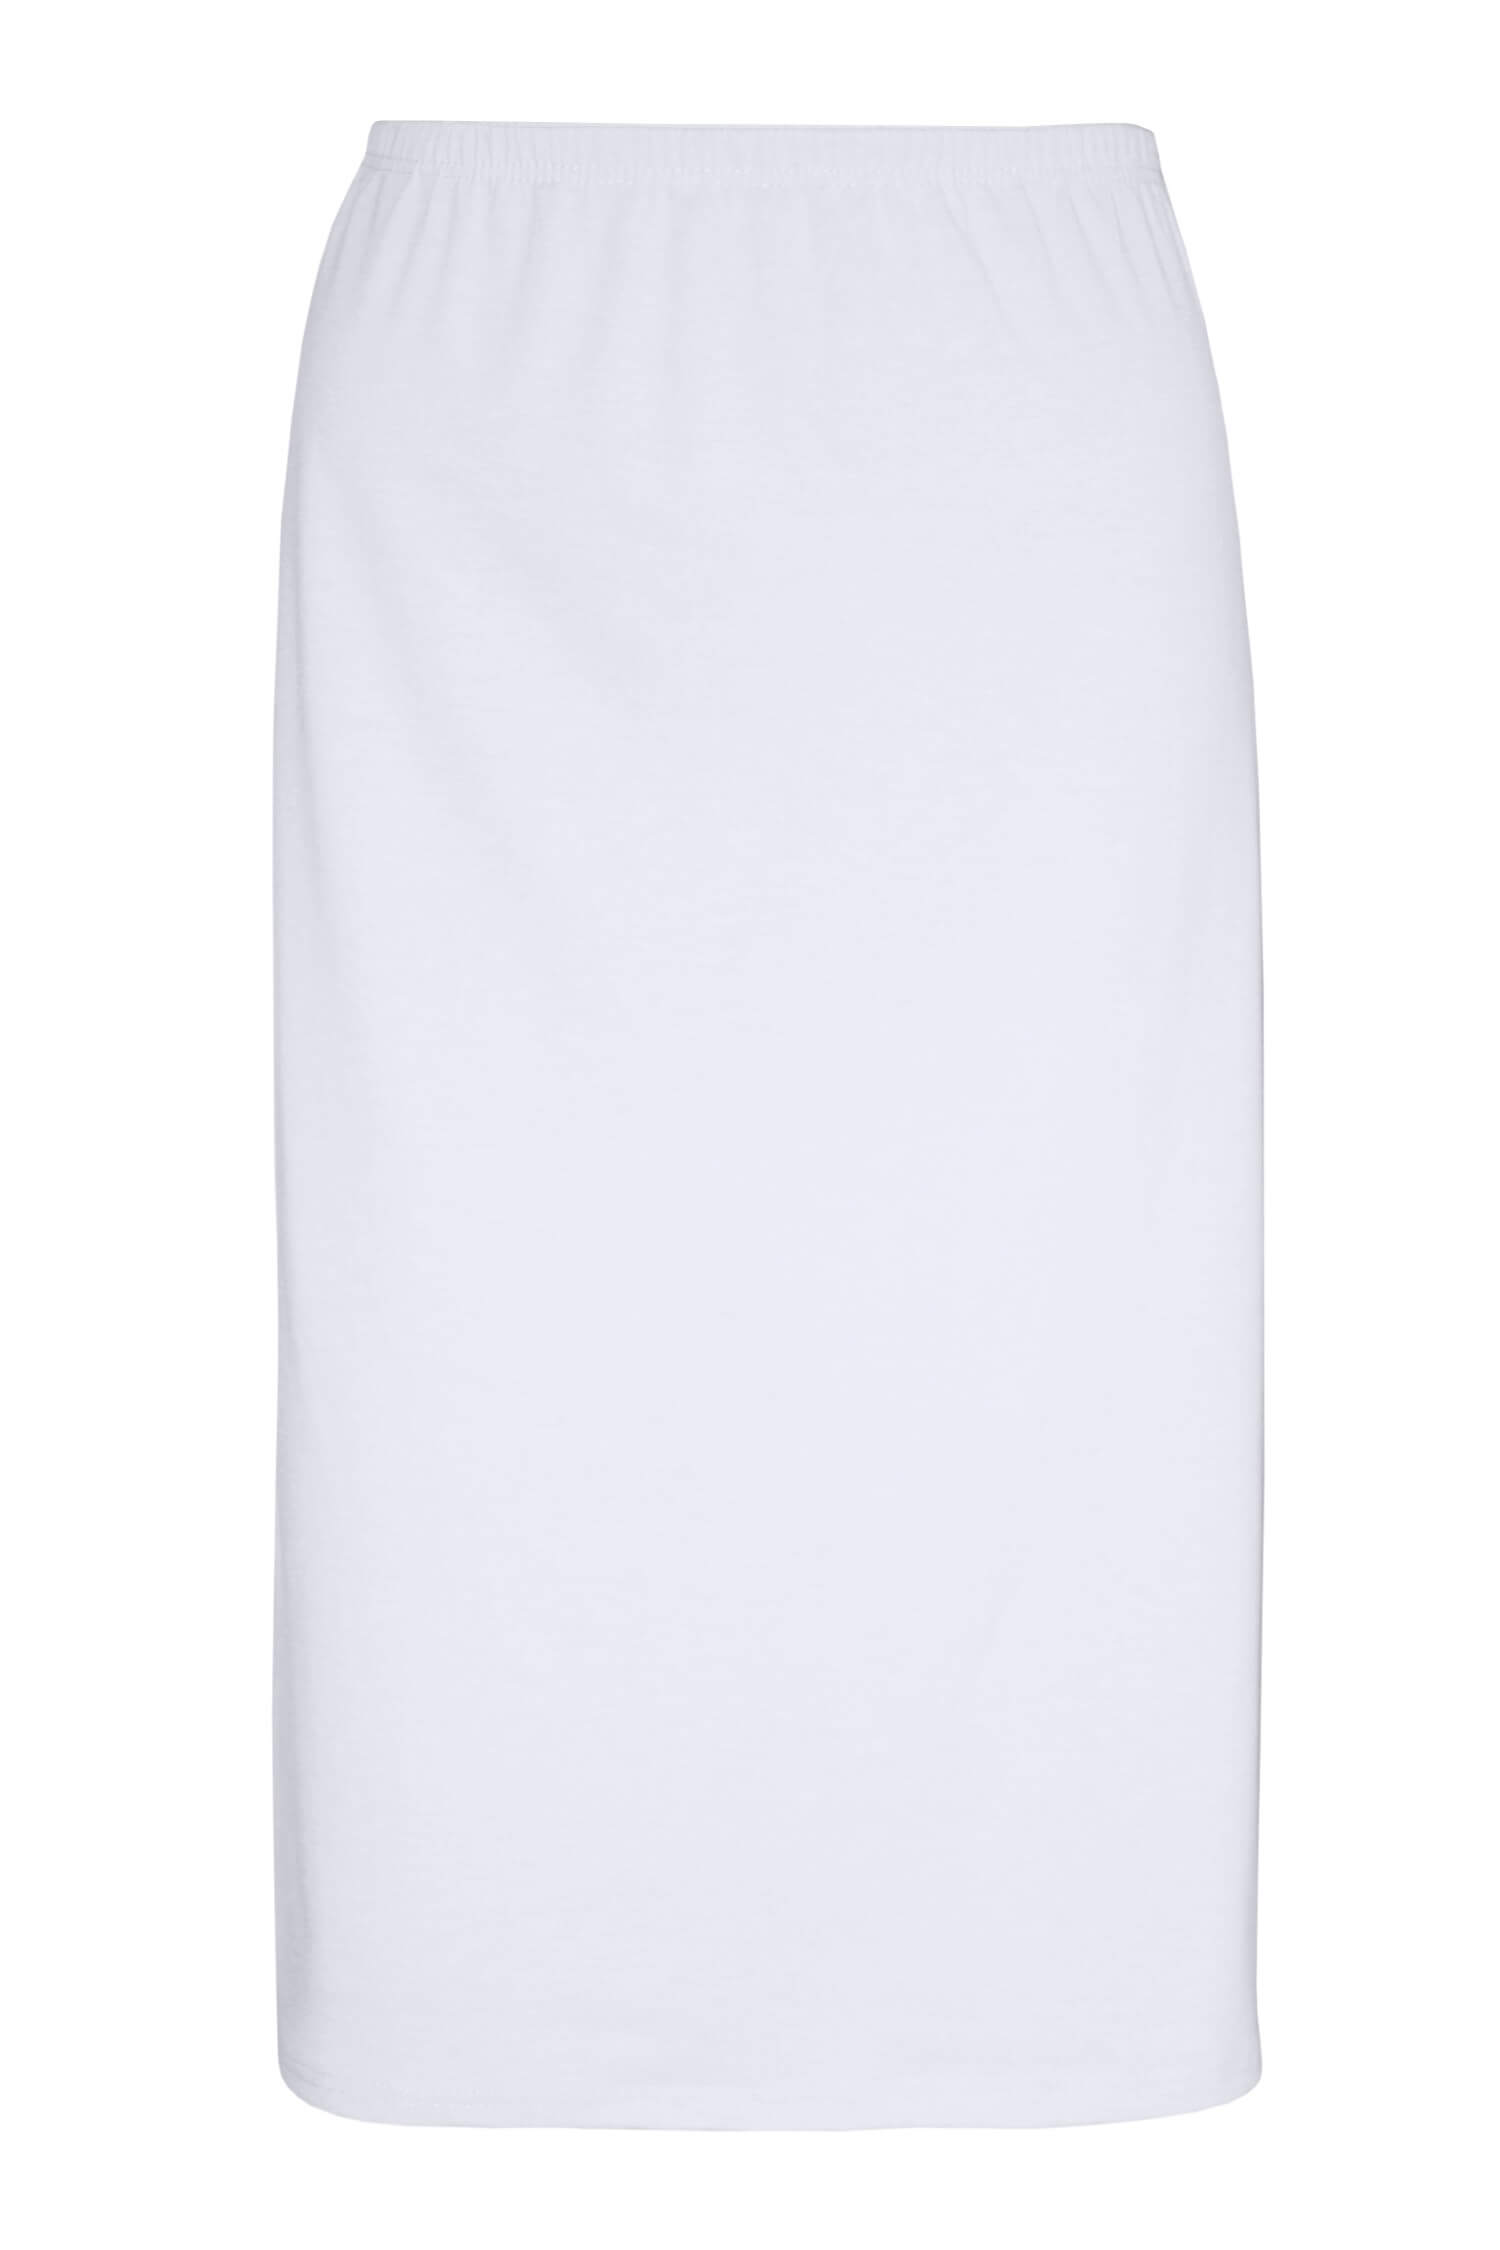 Arnoštka bavlněná spodnička - sukně 716 bílá L